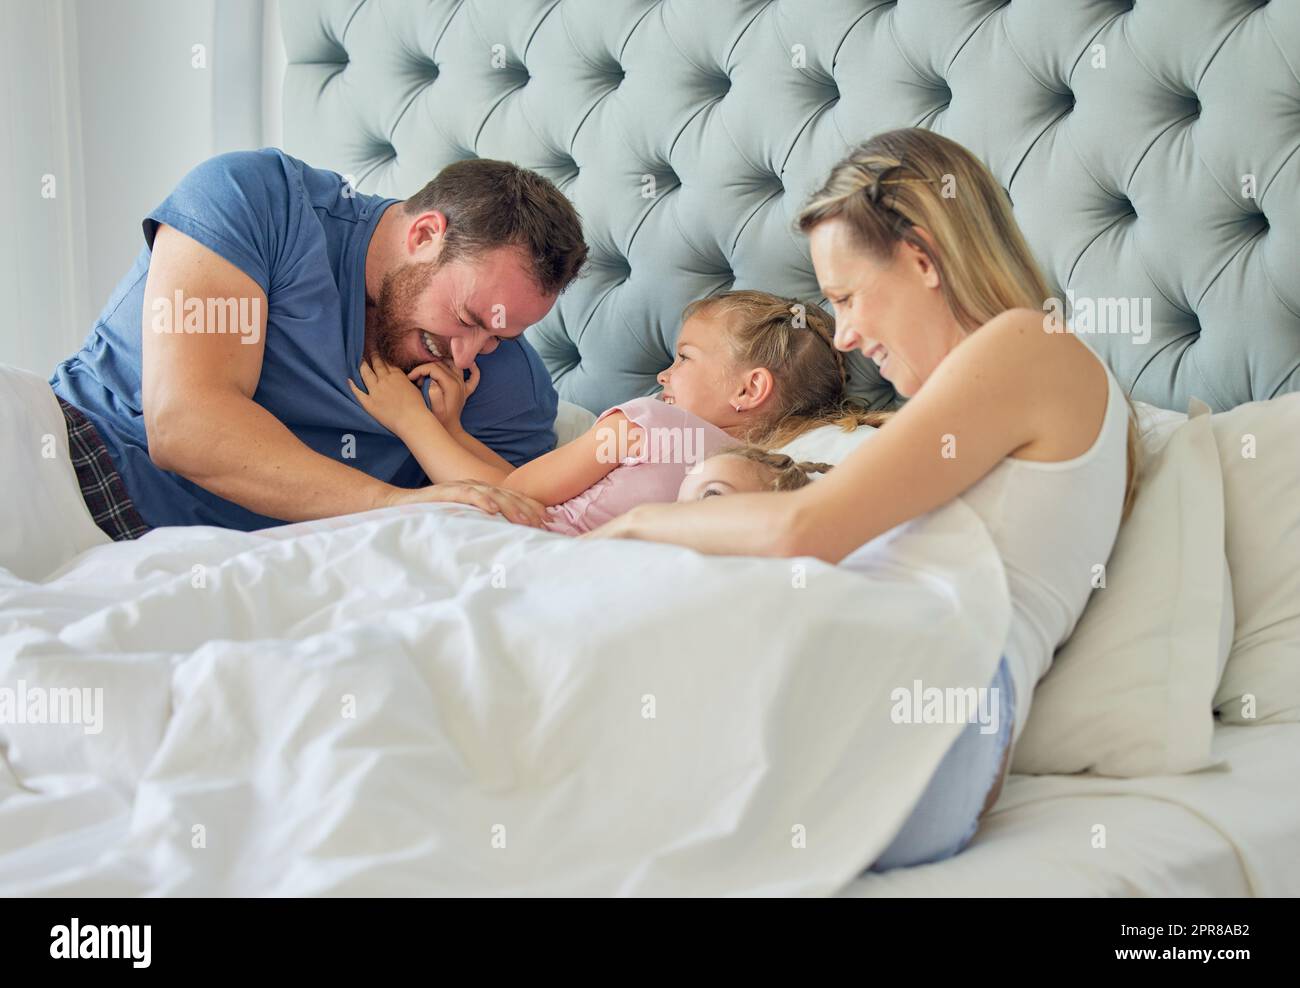 Glückliche weiße Familie, die mit zwei Töchtern im Bett lag. Zwei kleine Mädchen sehen glücklich aus und sind gleichzeitig verspielt und liebevoll mit ihren lächelnden Eltern. Eine vierköpfige Familie in einem großen, komfortablen Bett Stockfoto